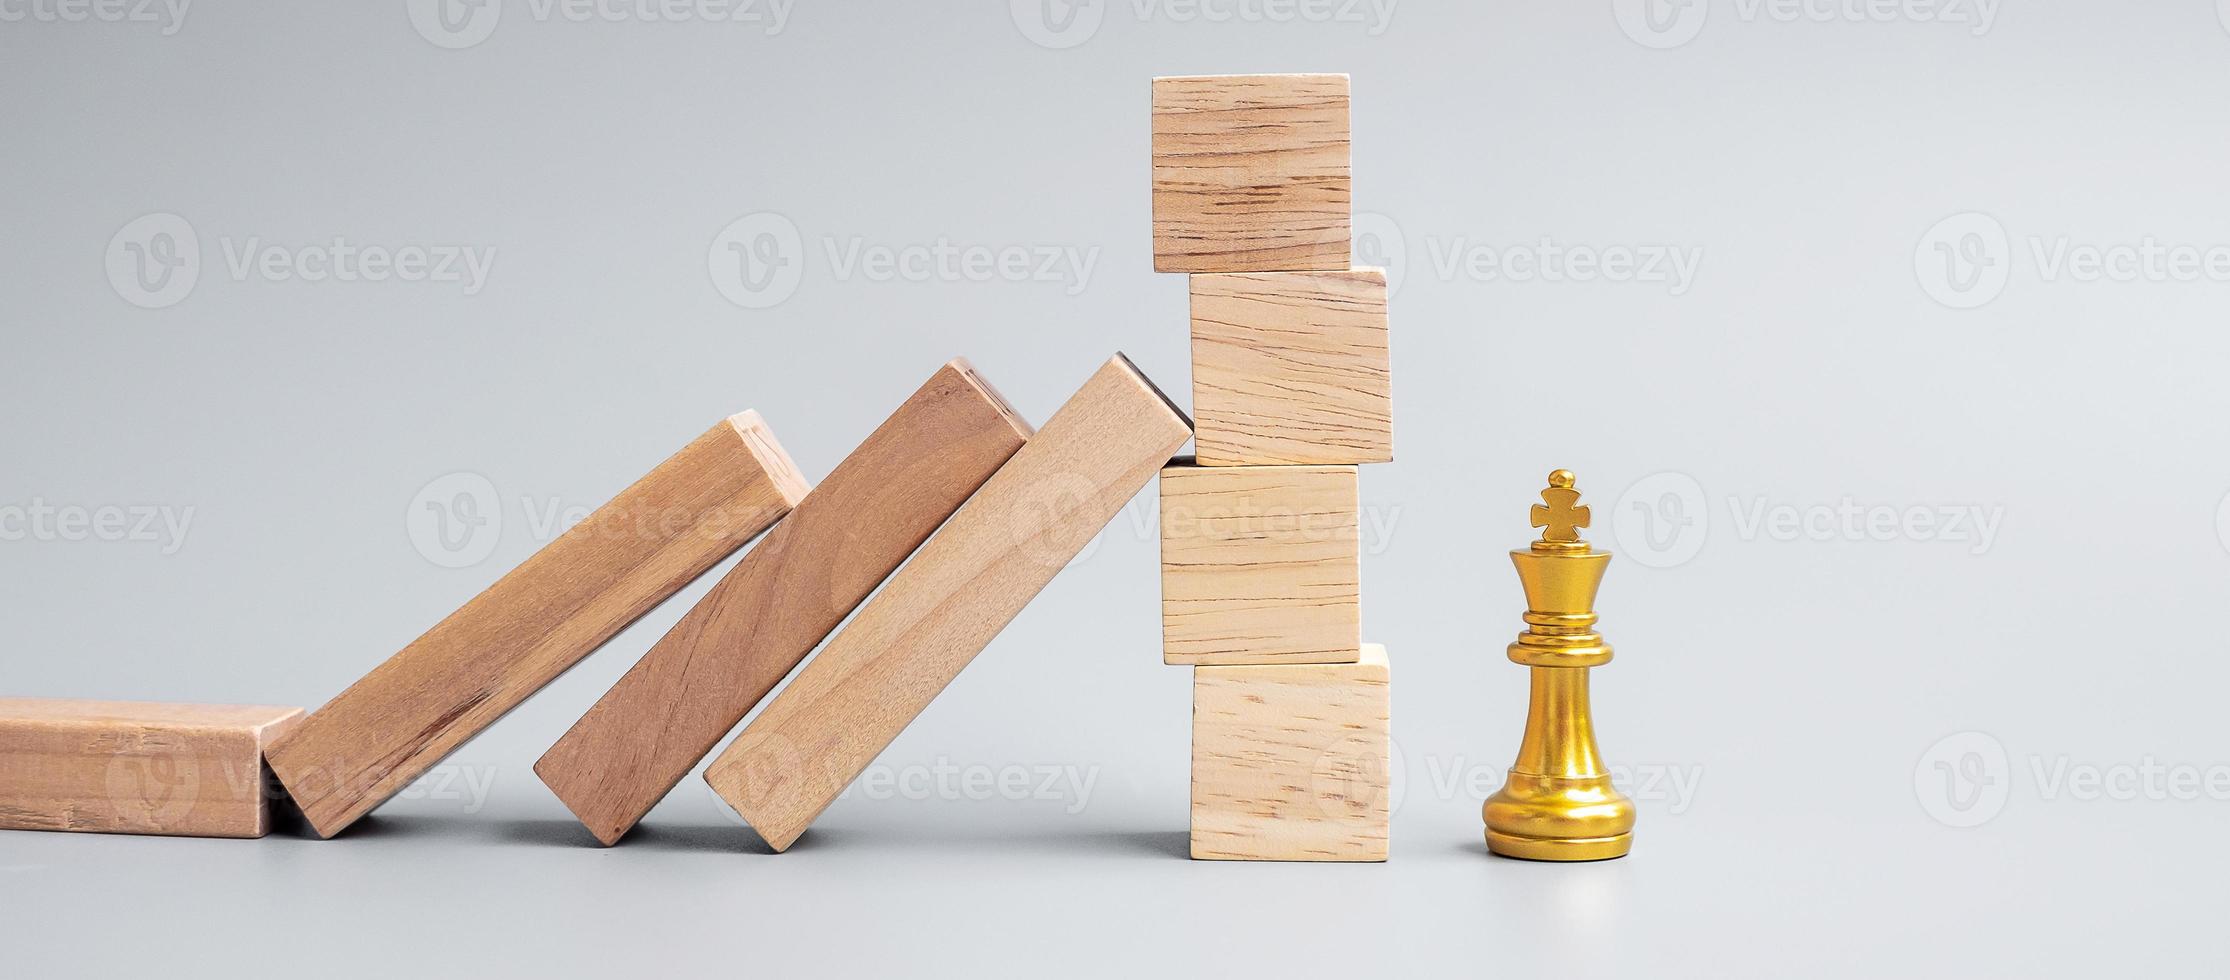 blocos de madeira ou dominó caindo para a figura do rei do xadrez dourado. negócios, gestão de risco, solução, regressão econômica, seguro foto